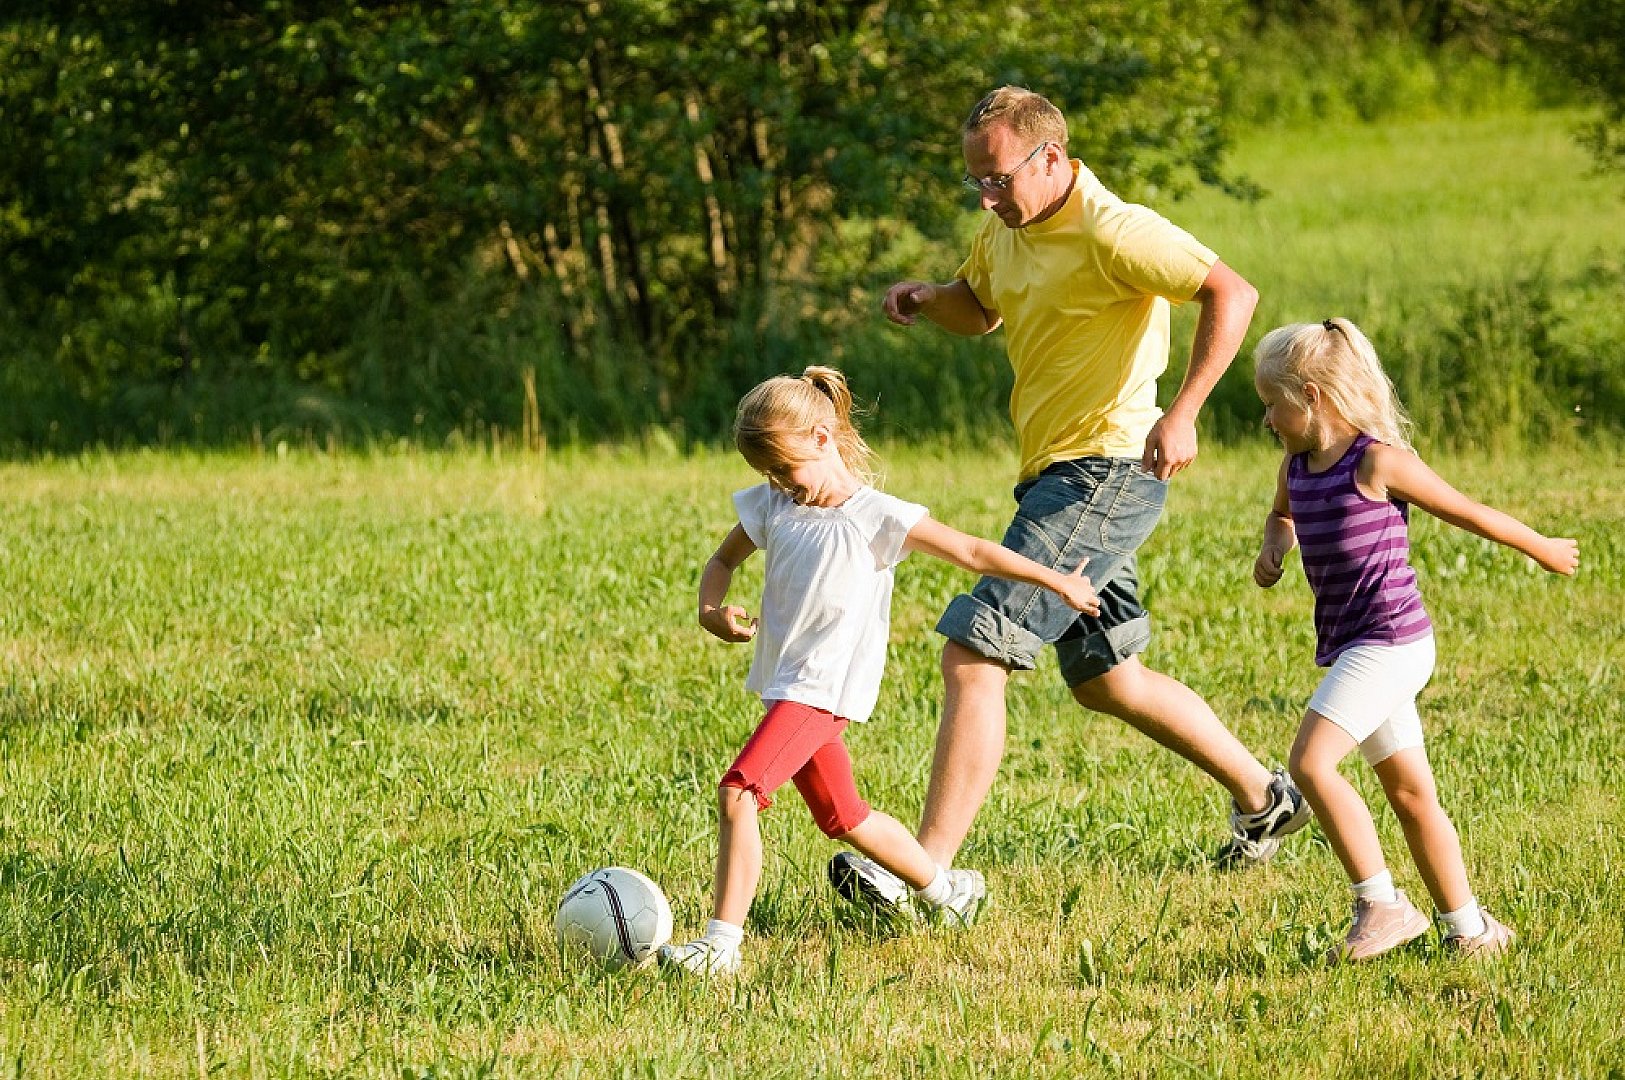 Друзьями на свежем воздухе. Занятия спортом на свежем воздухе. Прогулка на природе. Игры на свежем воздухе для детей. Спортивная семья на природе.